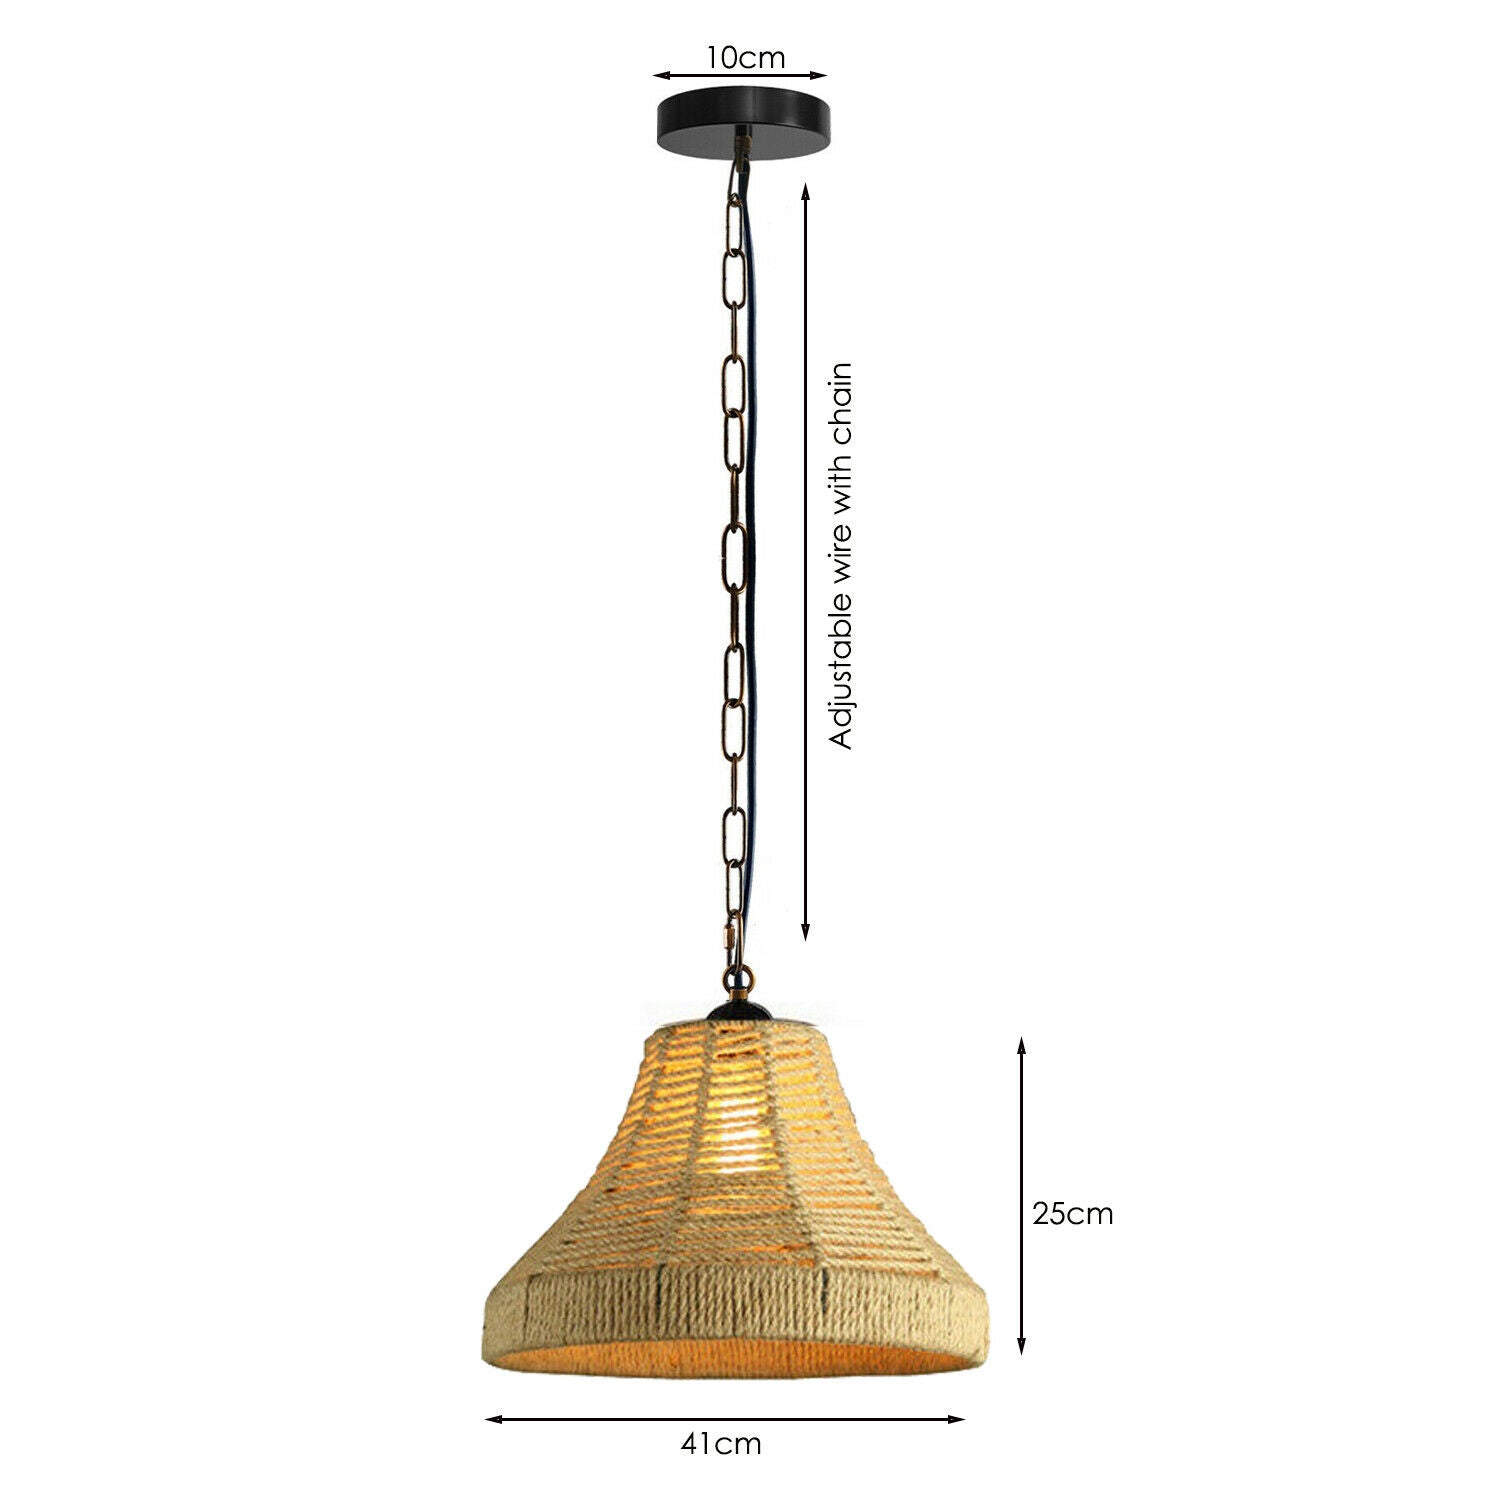 LEDSone industrial Bell Shape Ceiling Pendant Light Hemp Rope Hanging Light E27 Lamp Shade~1533 - LEDSone UK Ltd